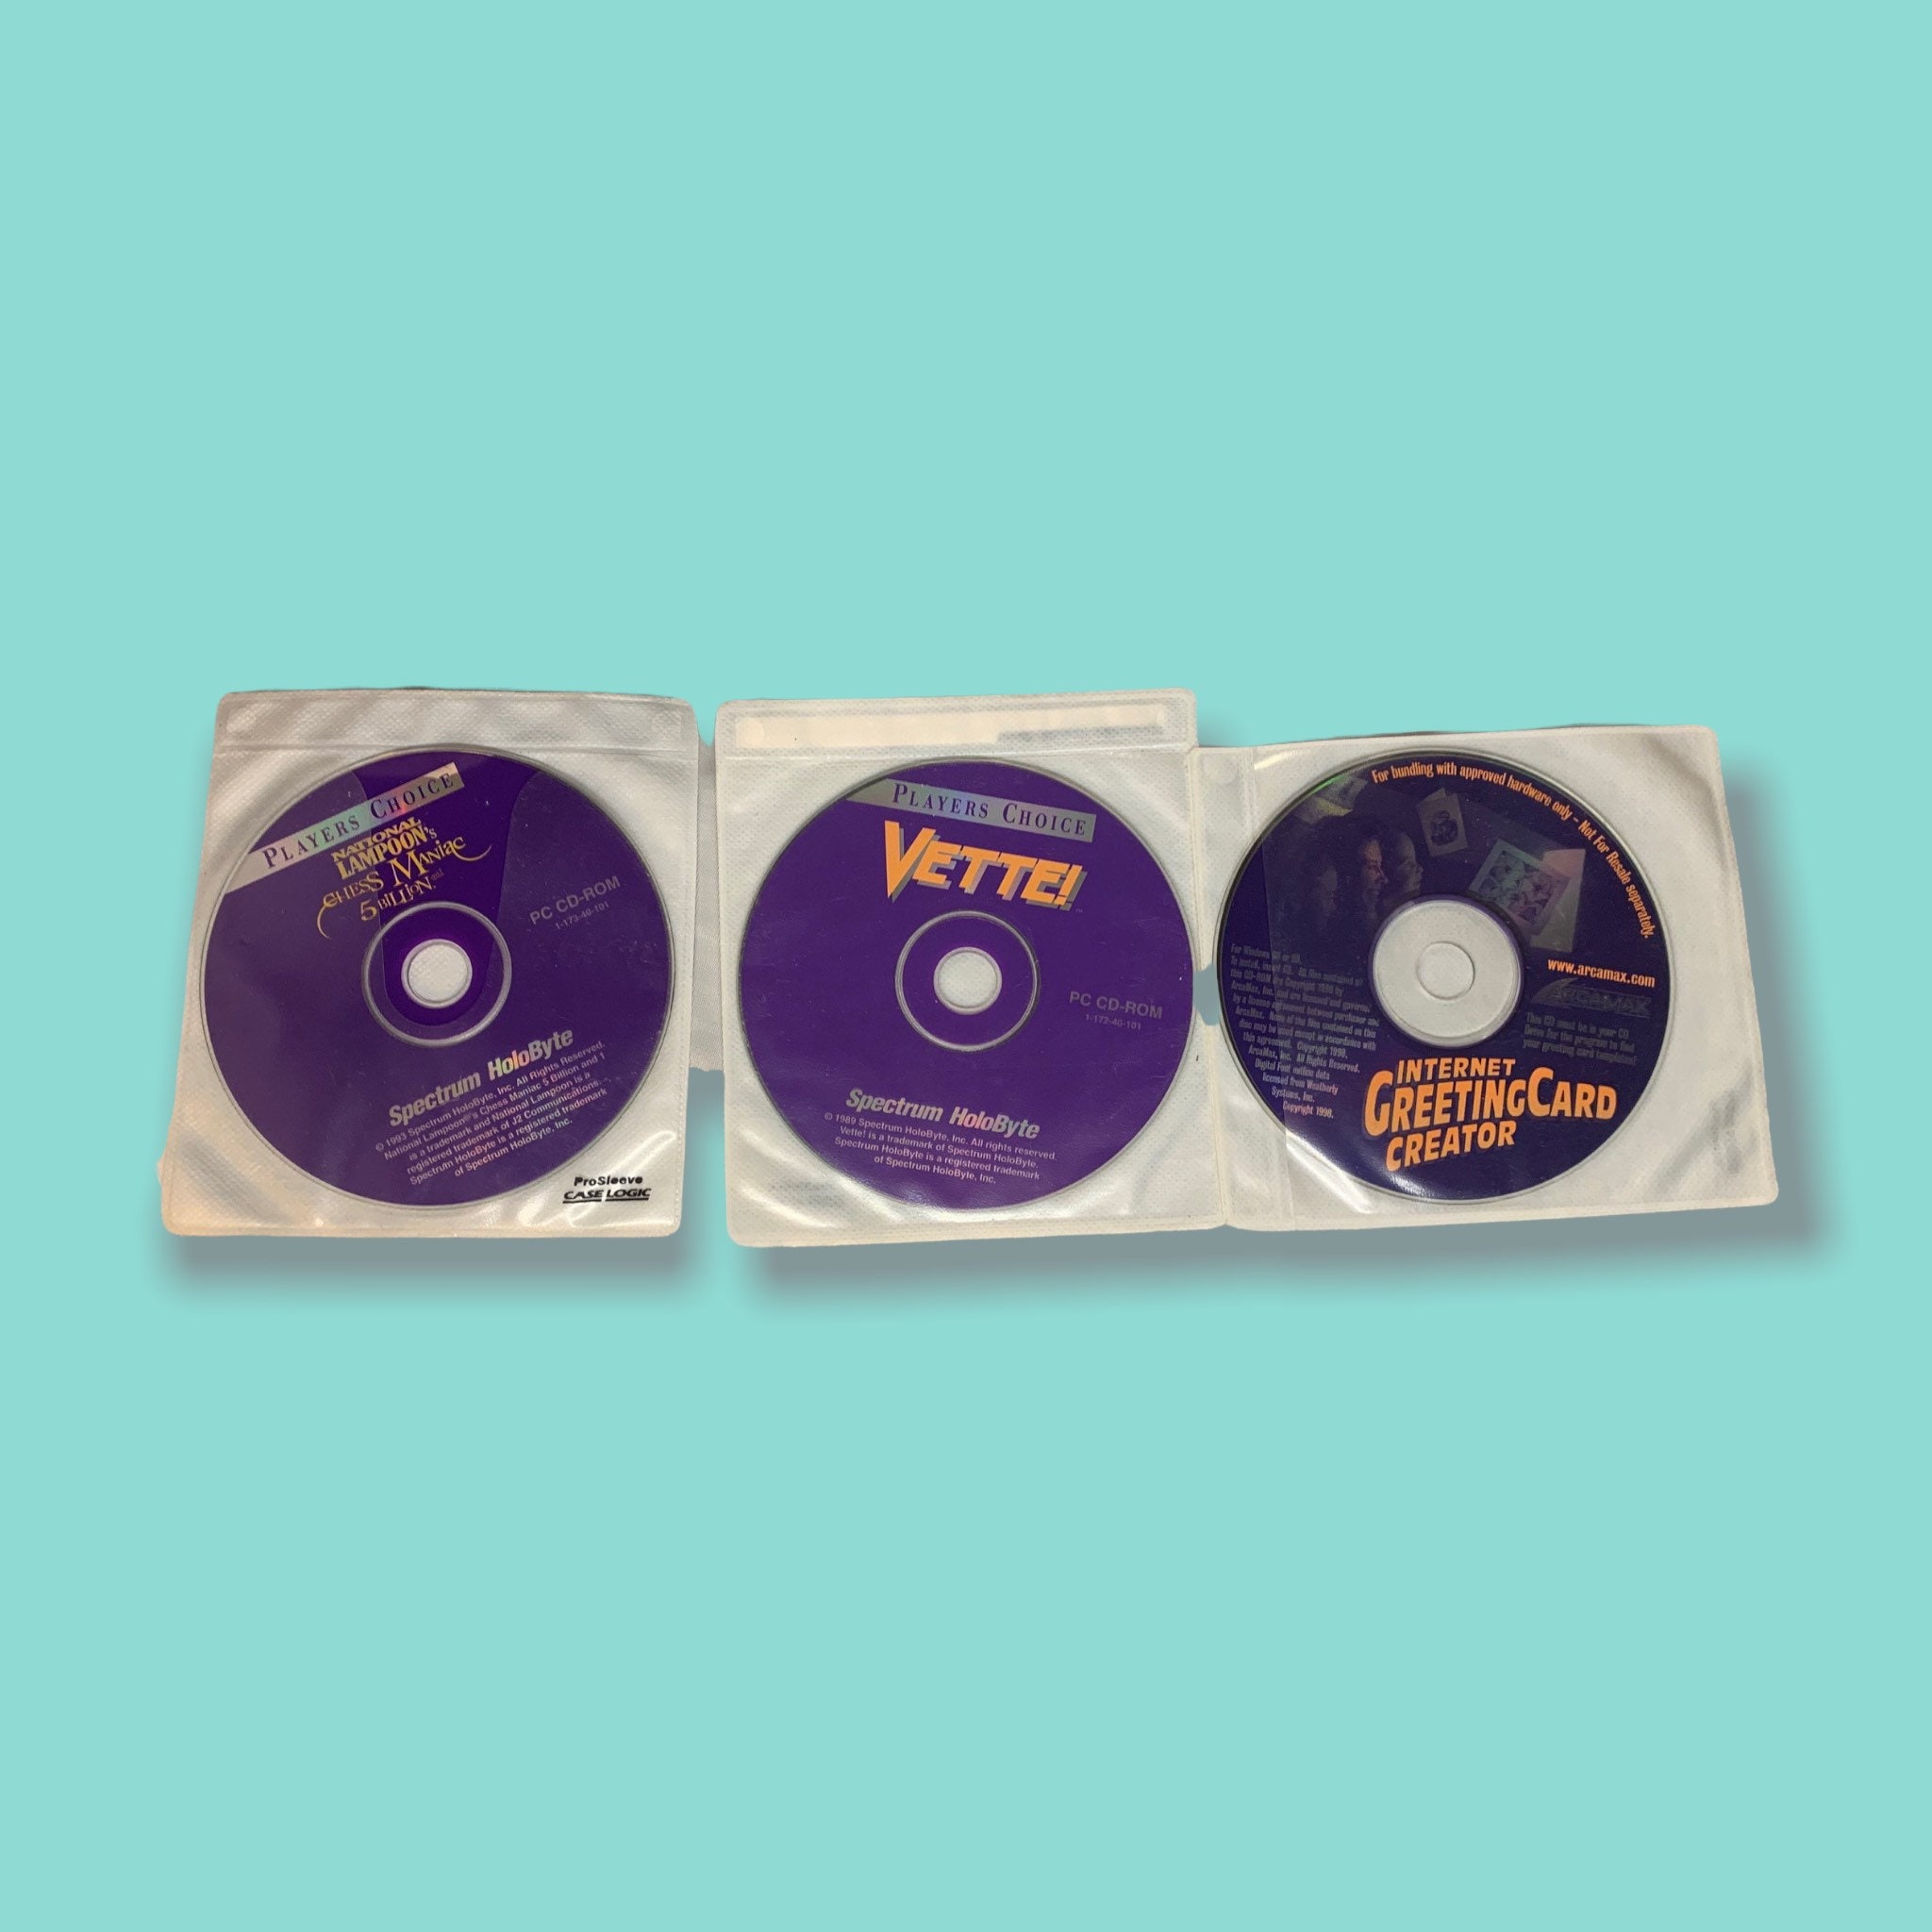 Hasbro Toy Story 2 Jogo de Ação Disney Interactive PC CD Game Windows 95/98